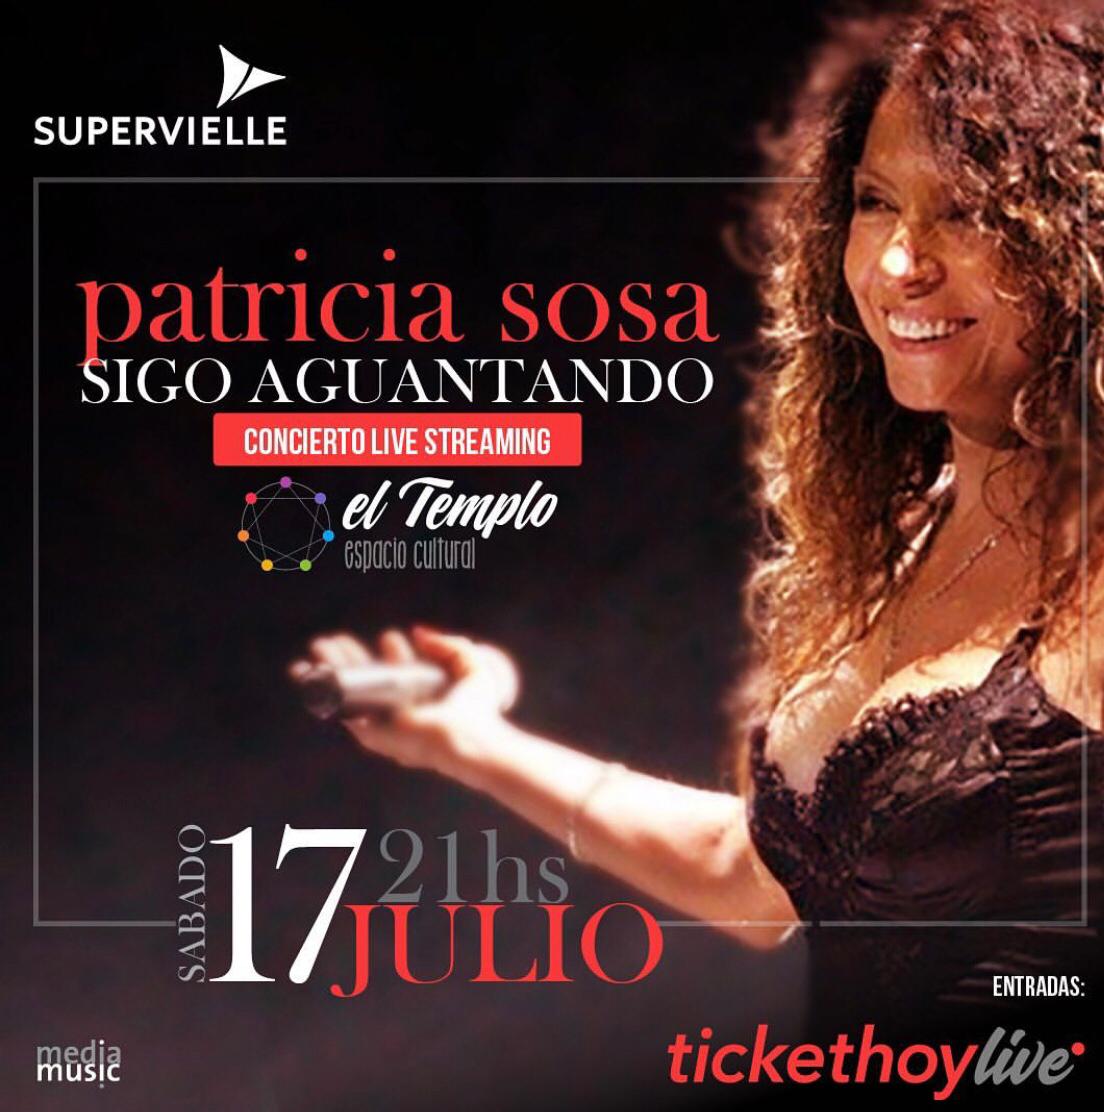  Patricia Sosa Live Streaming “Sigo Aguantando”